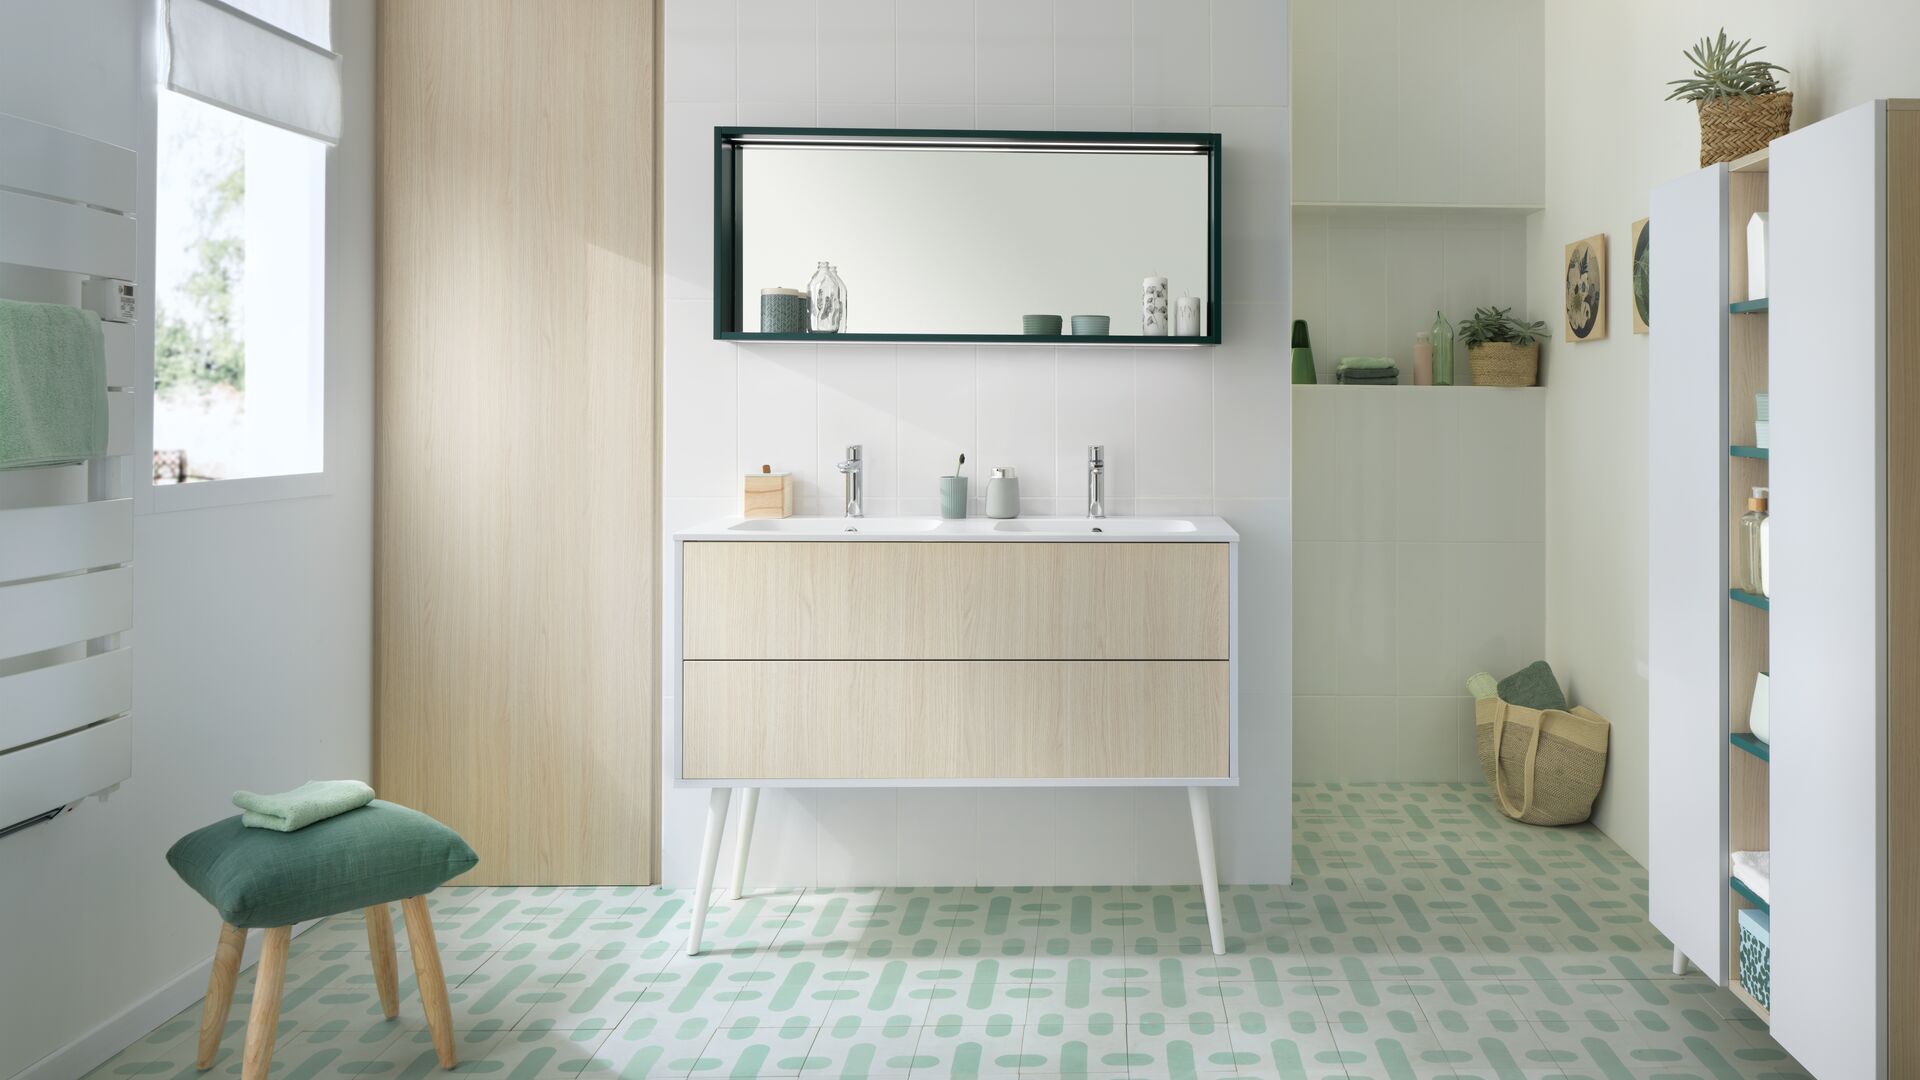 Modernes Bad in Holz und weiß